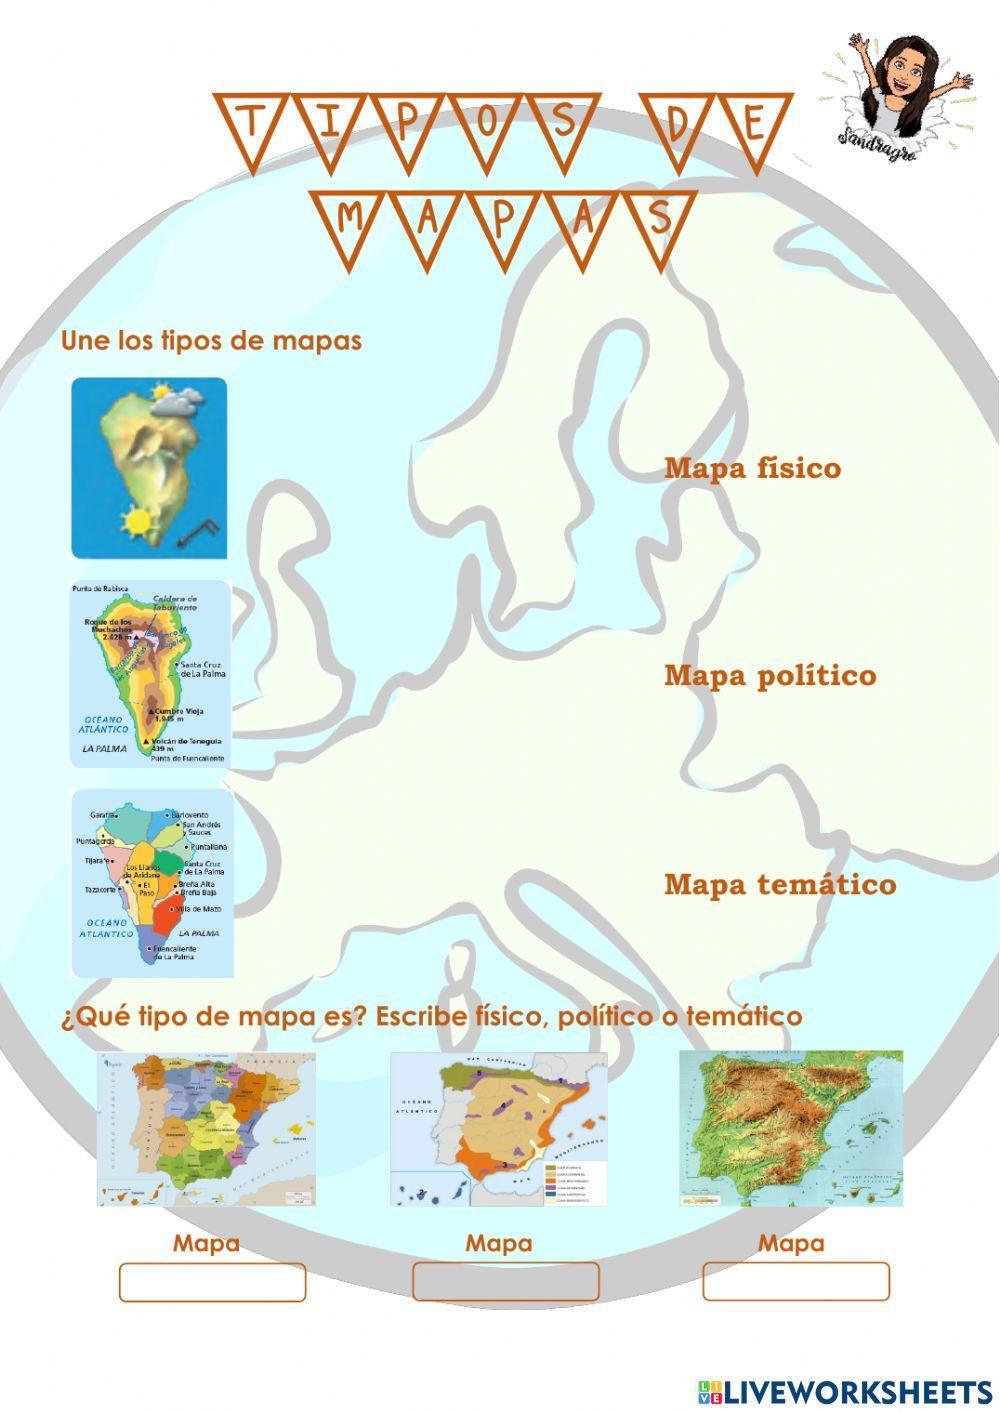 Tipos de mapas